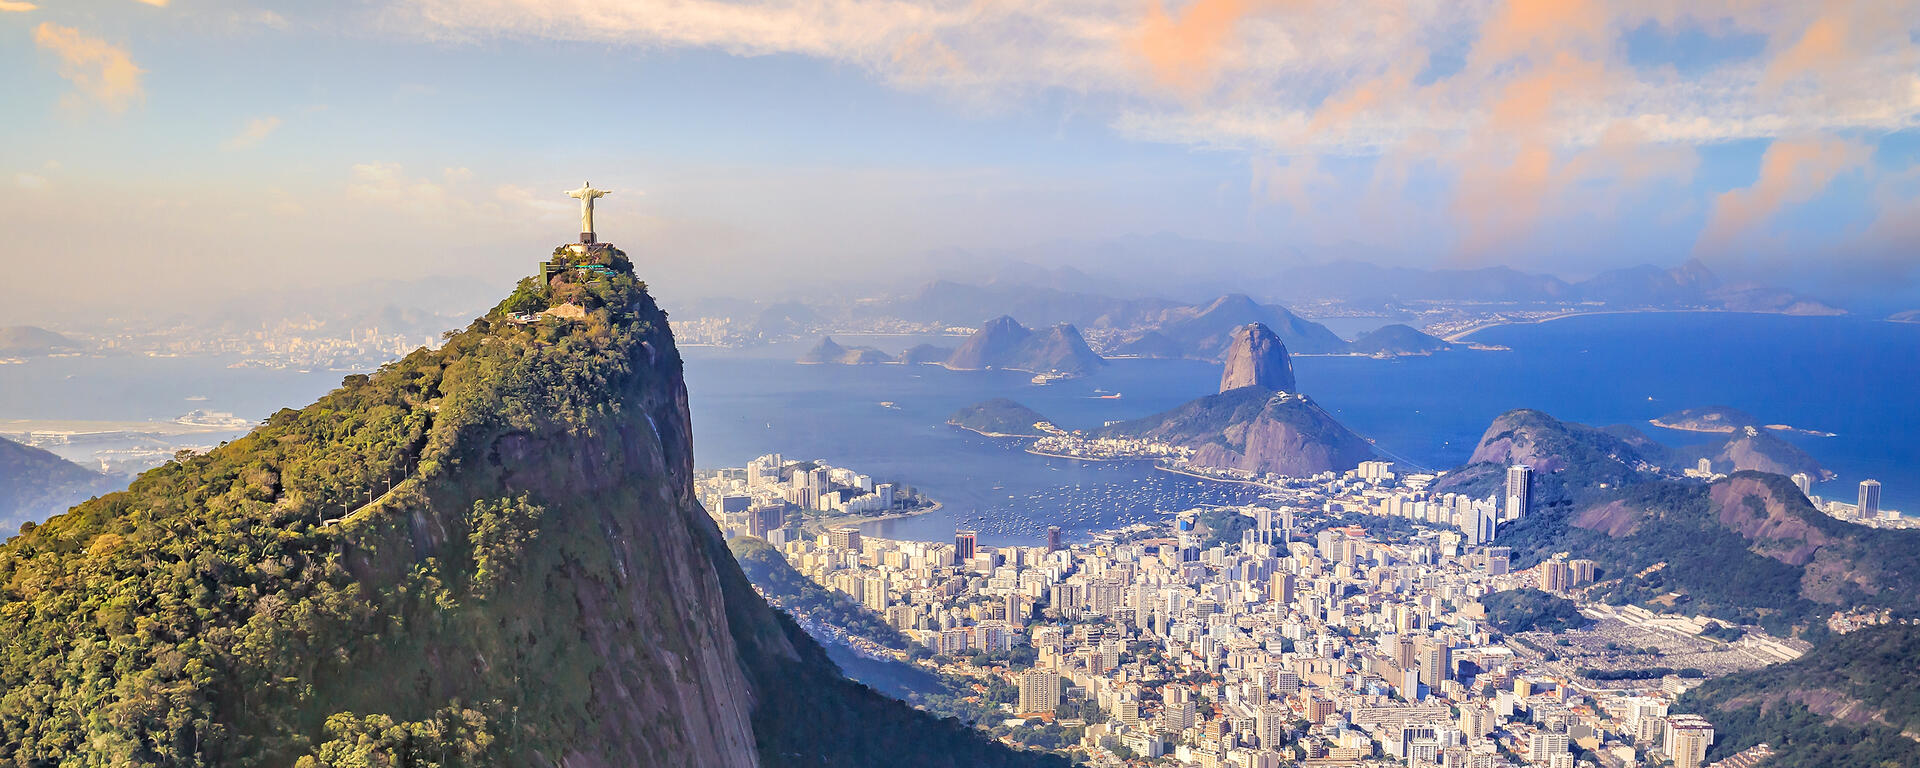 Aerial view of Christ the Redeemer and Rio de Janeiro city